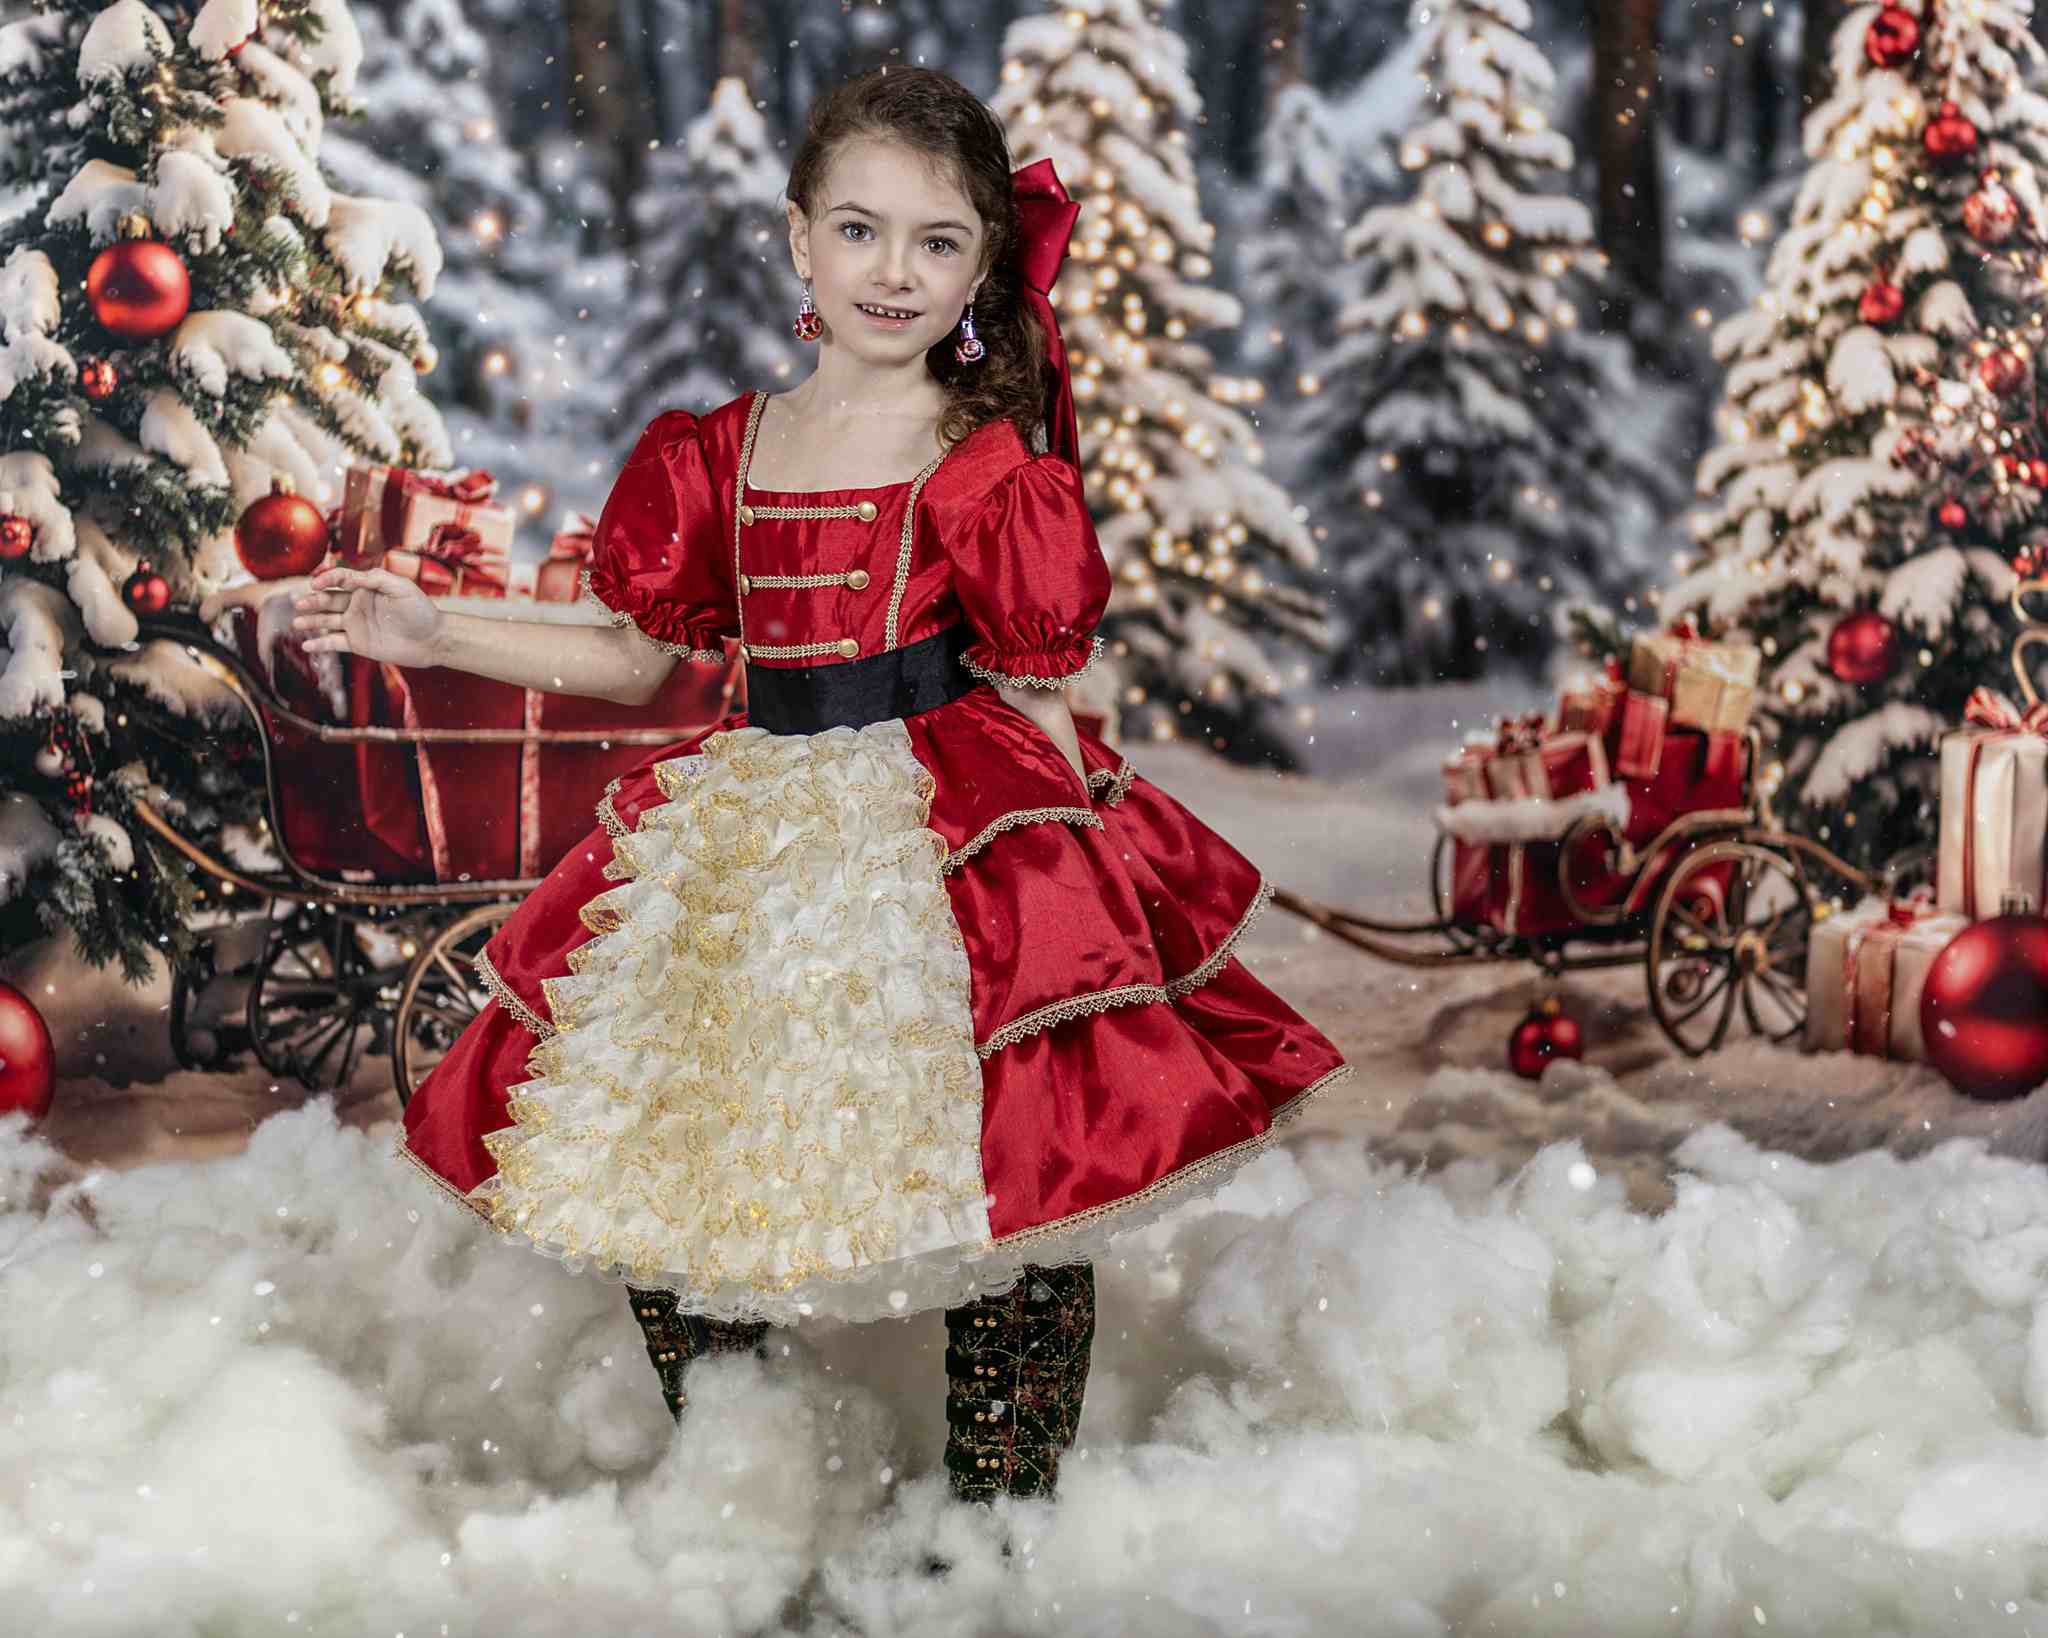 Kate Sapin de Noël Extérieur Neige Cadeaux Toile de fond pour la photographie